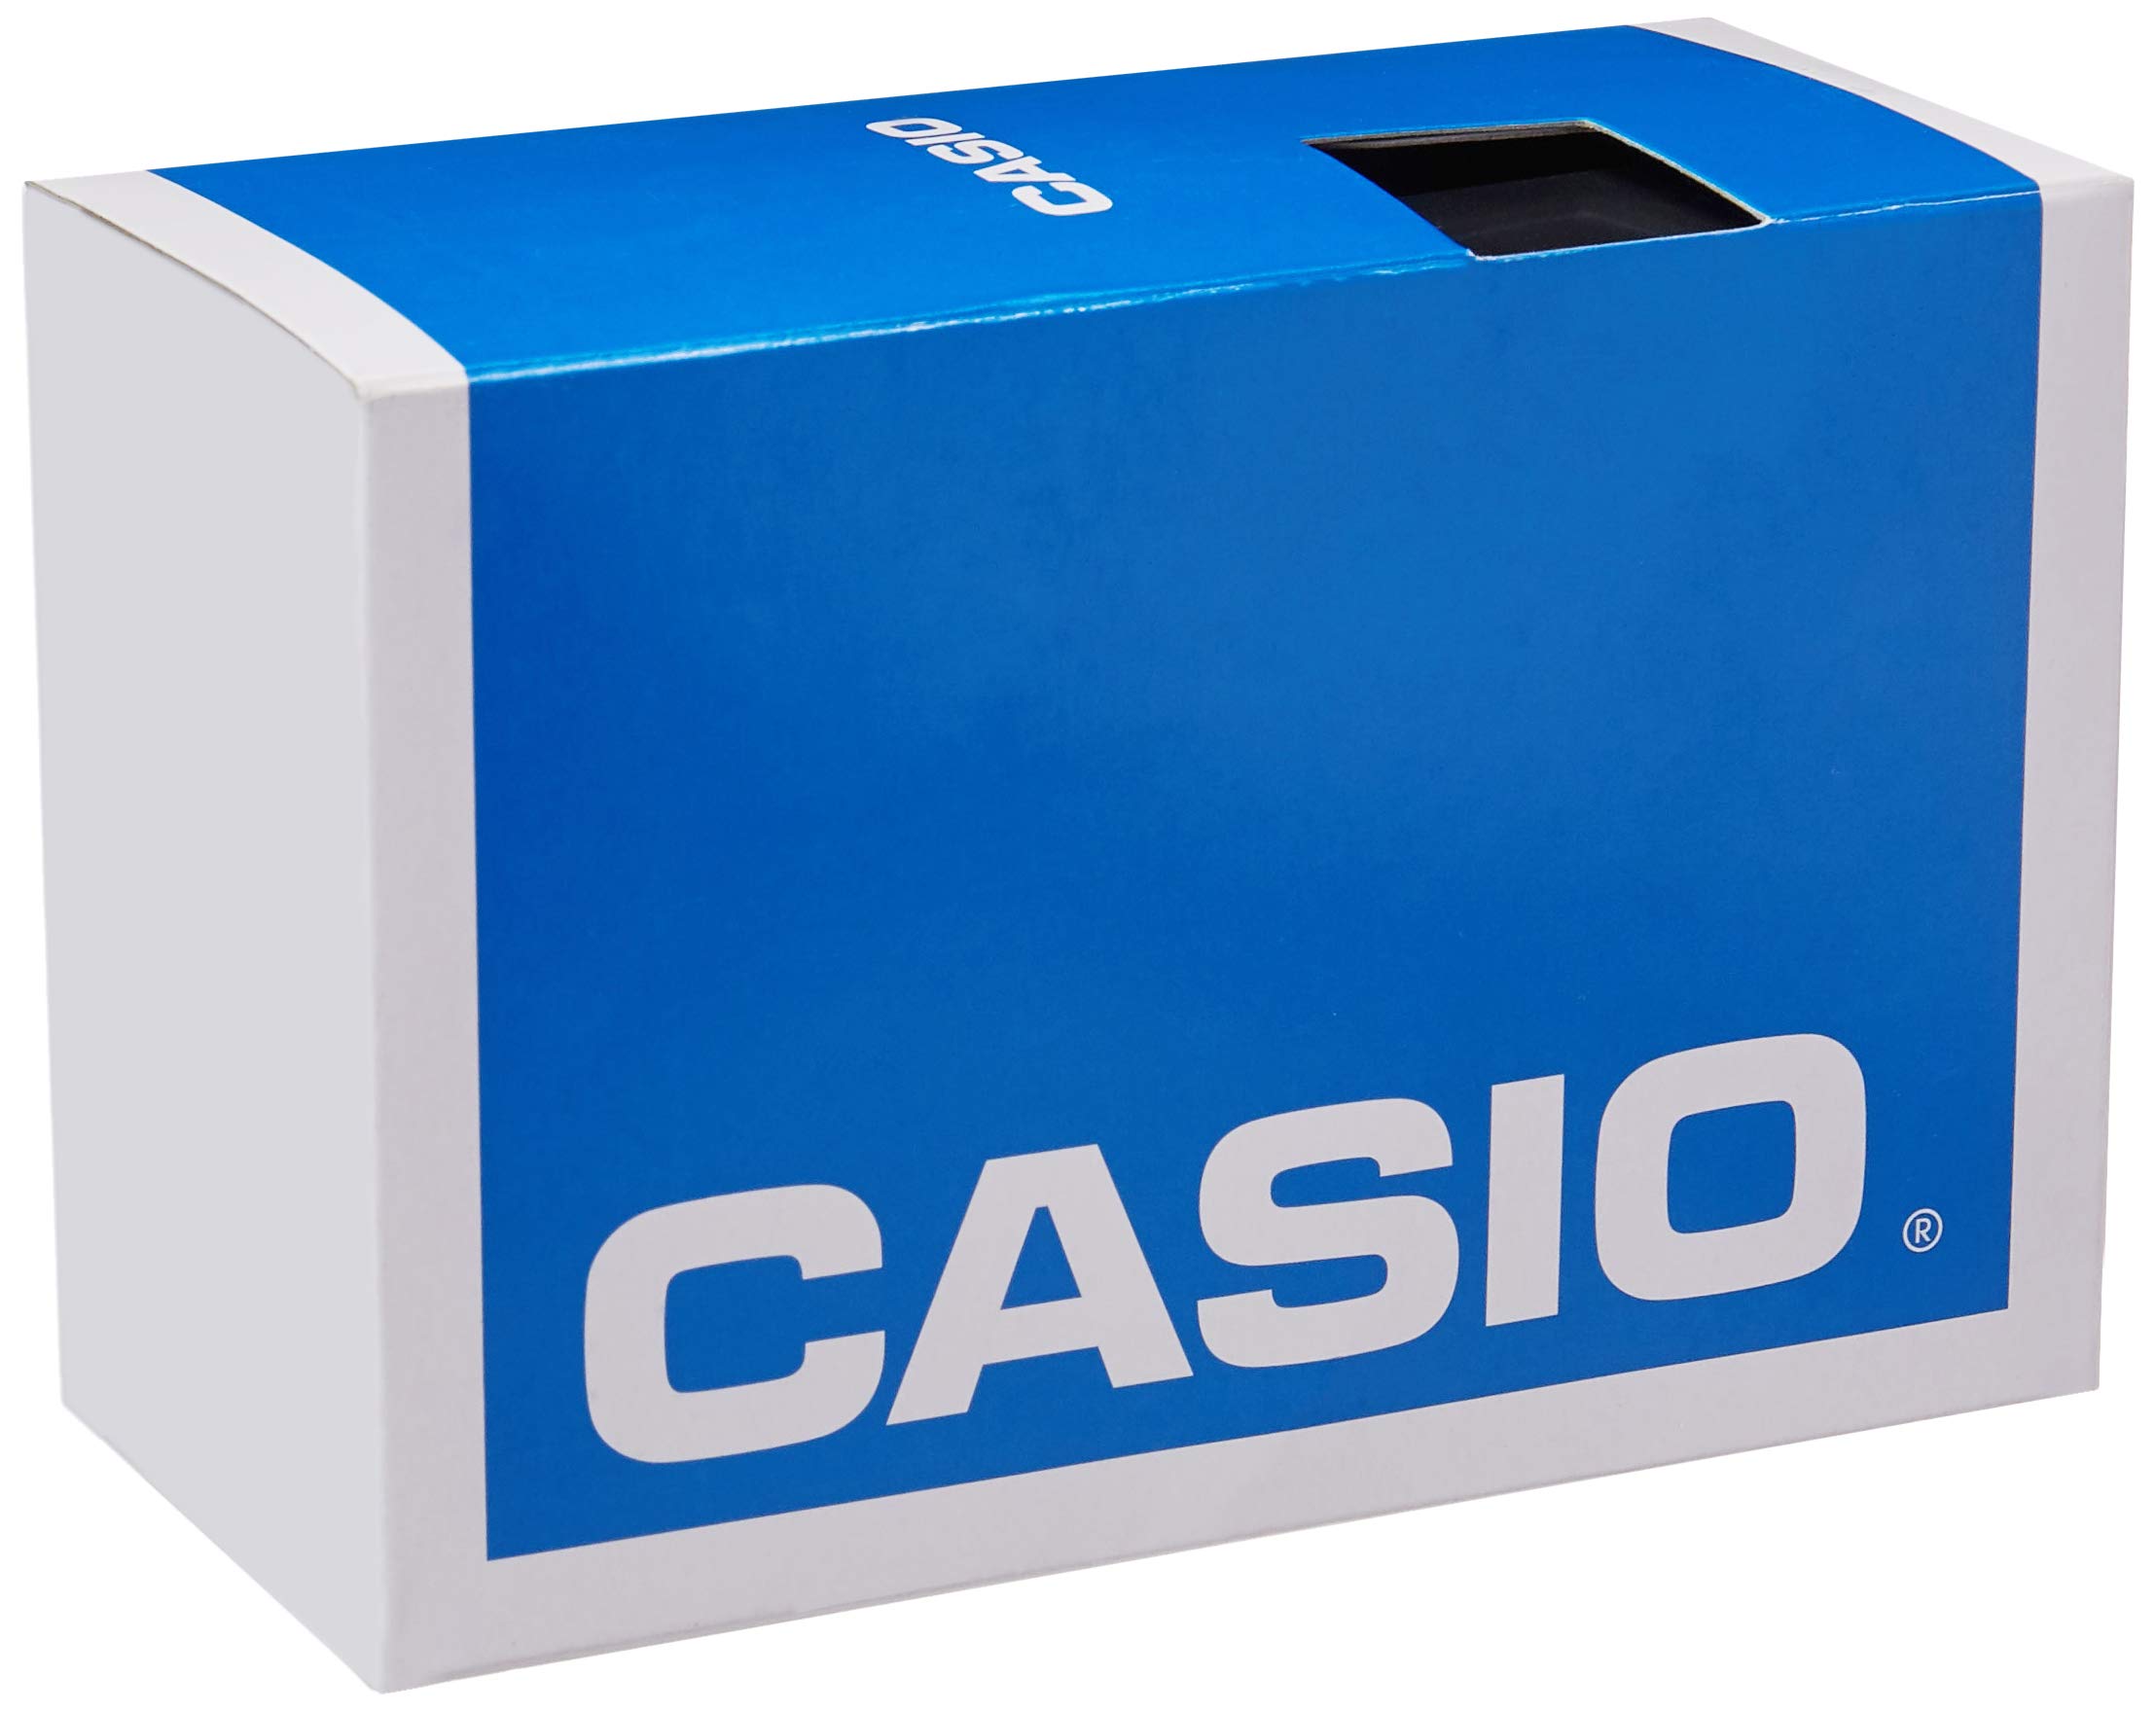 Casio - Casio Mens Tough Solar Illumina (WS210H-1AVCF) ,Black